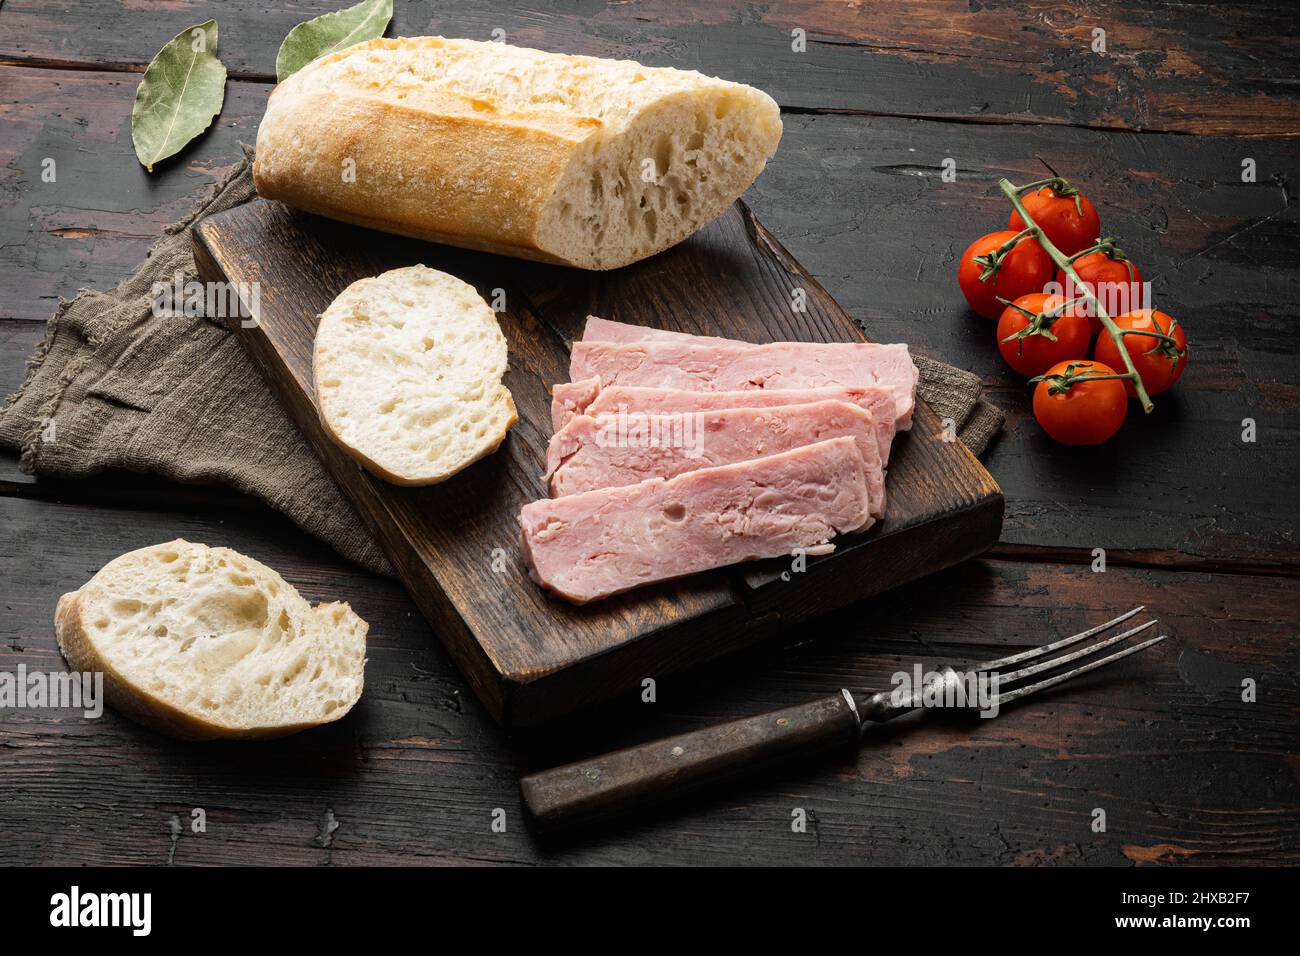 Spam Sandwich Immagini e Fotos Stock - Alamy